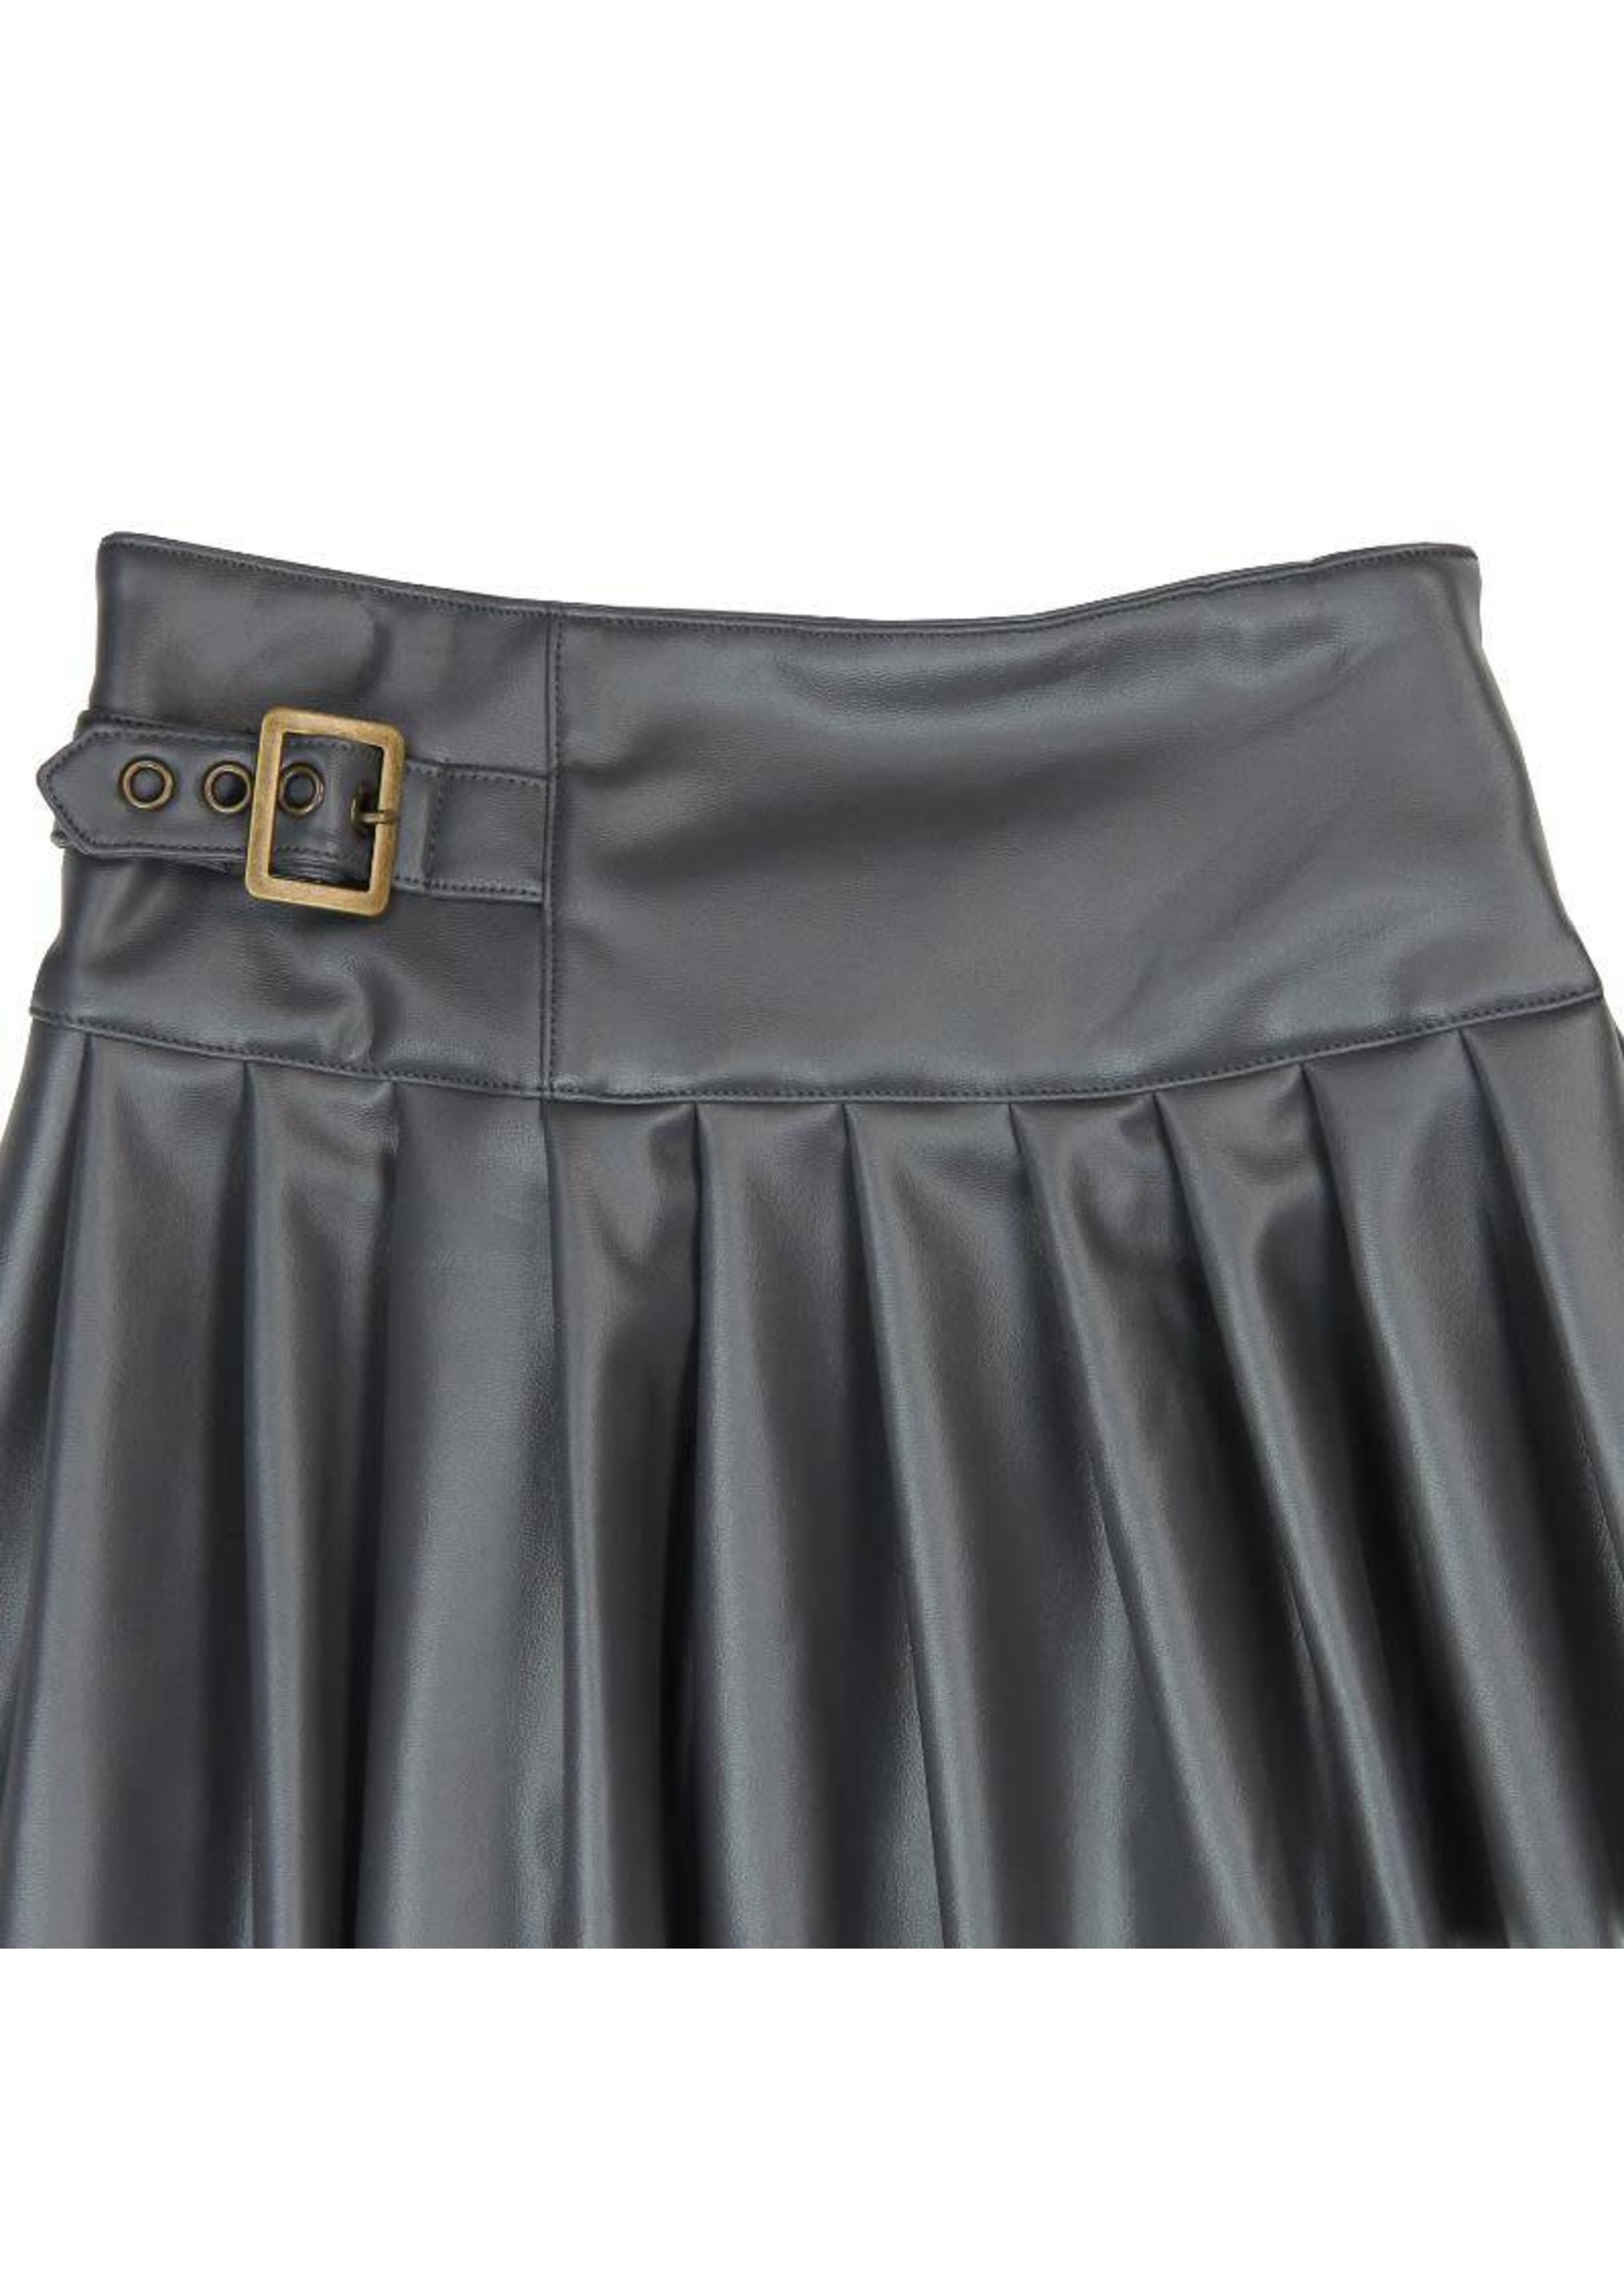 Boboli Boboli Synthetic leather skirt for girl steel